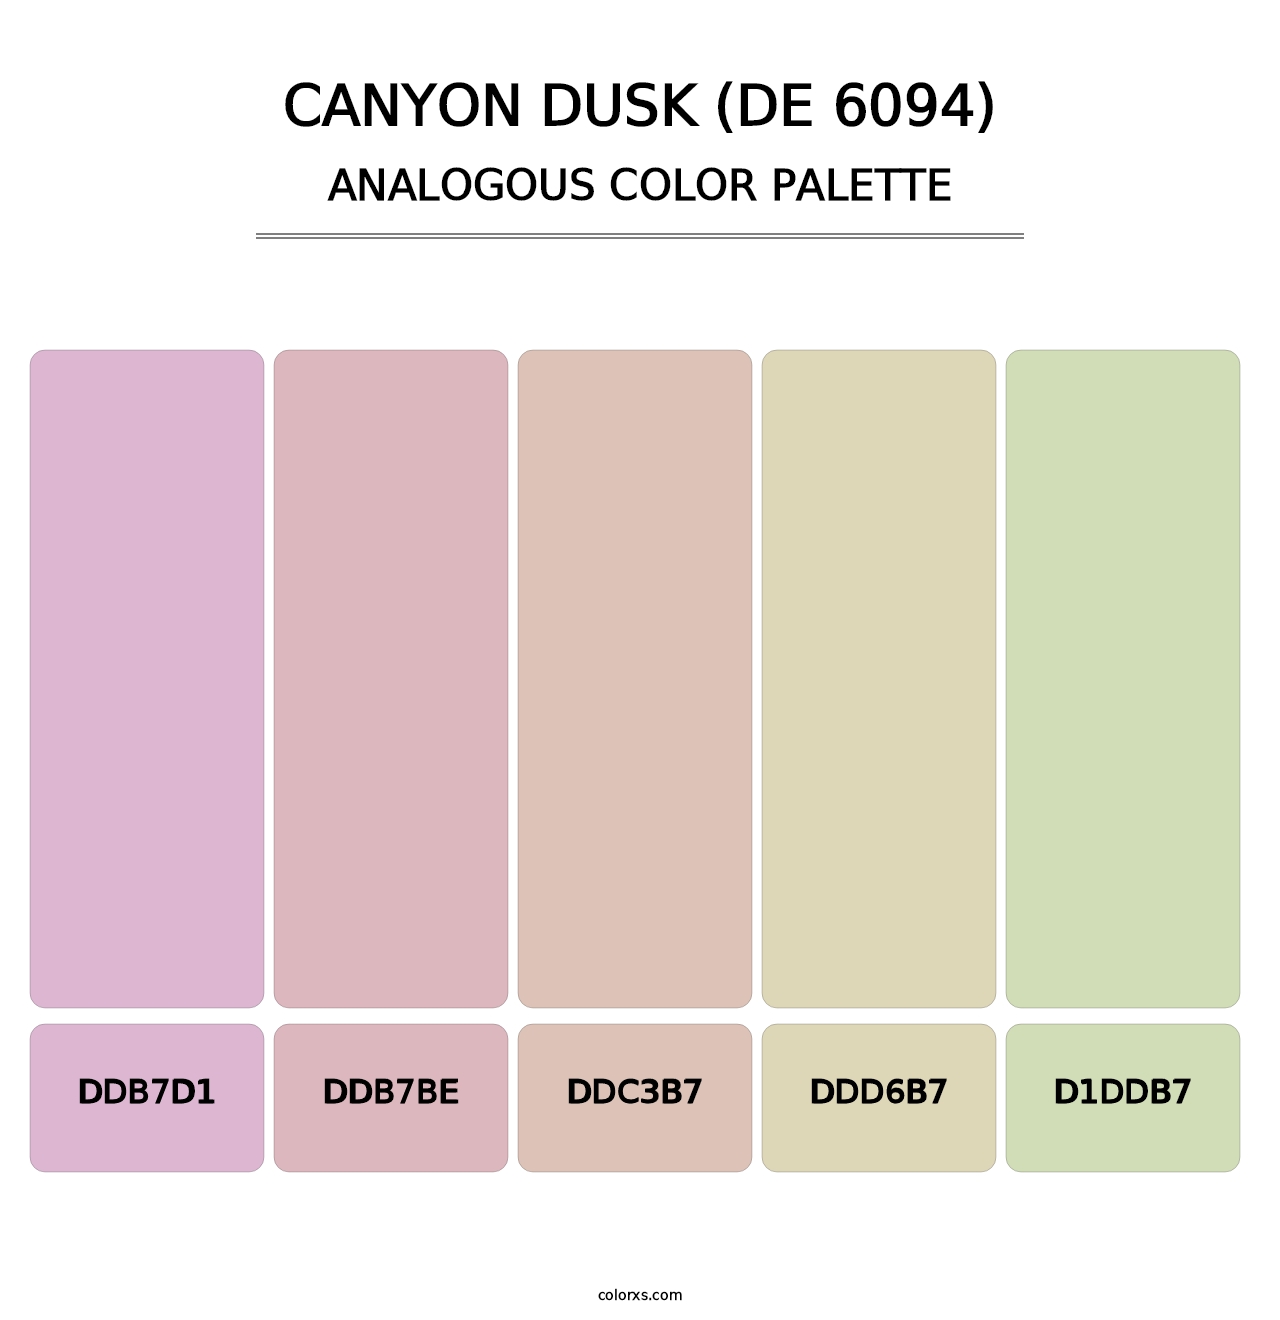 Canyon Dusk (DE 6094) - Analogous Color Palette